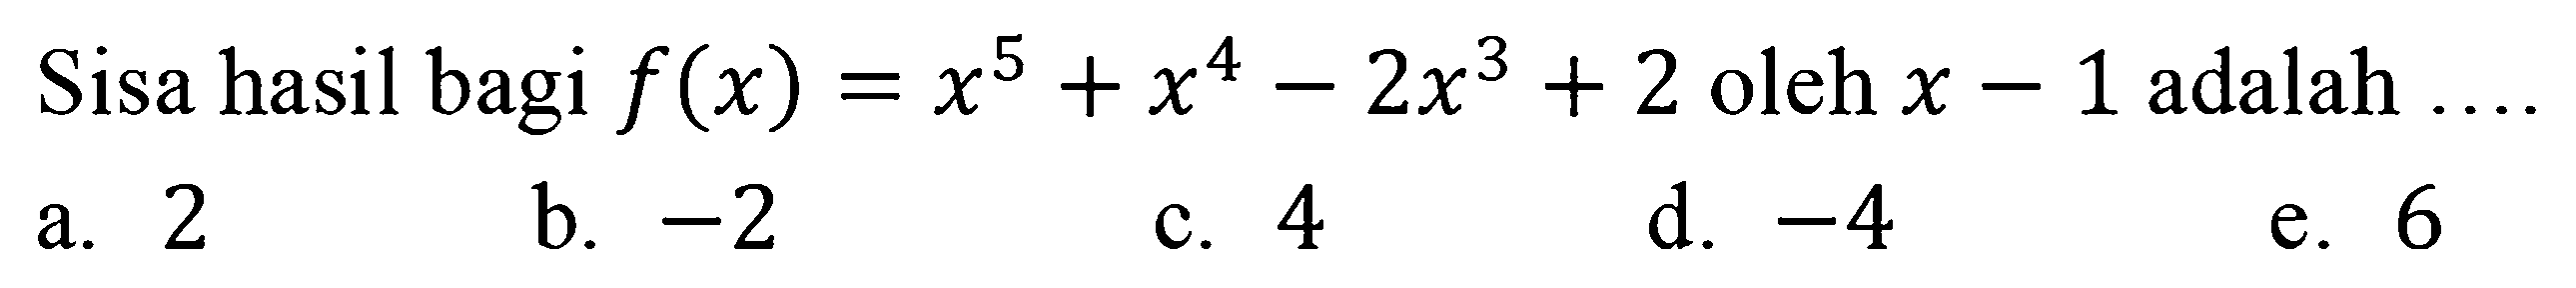 Sisa hasil bagi f(x)=x^5+x^4-2x^3+2 oleh x-1 adalah ...